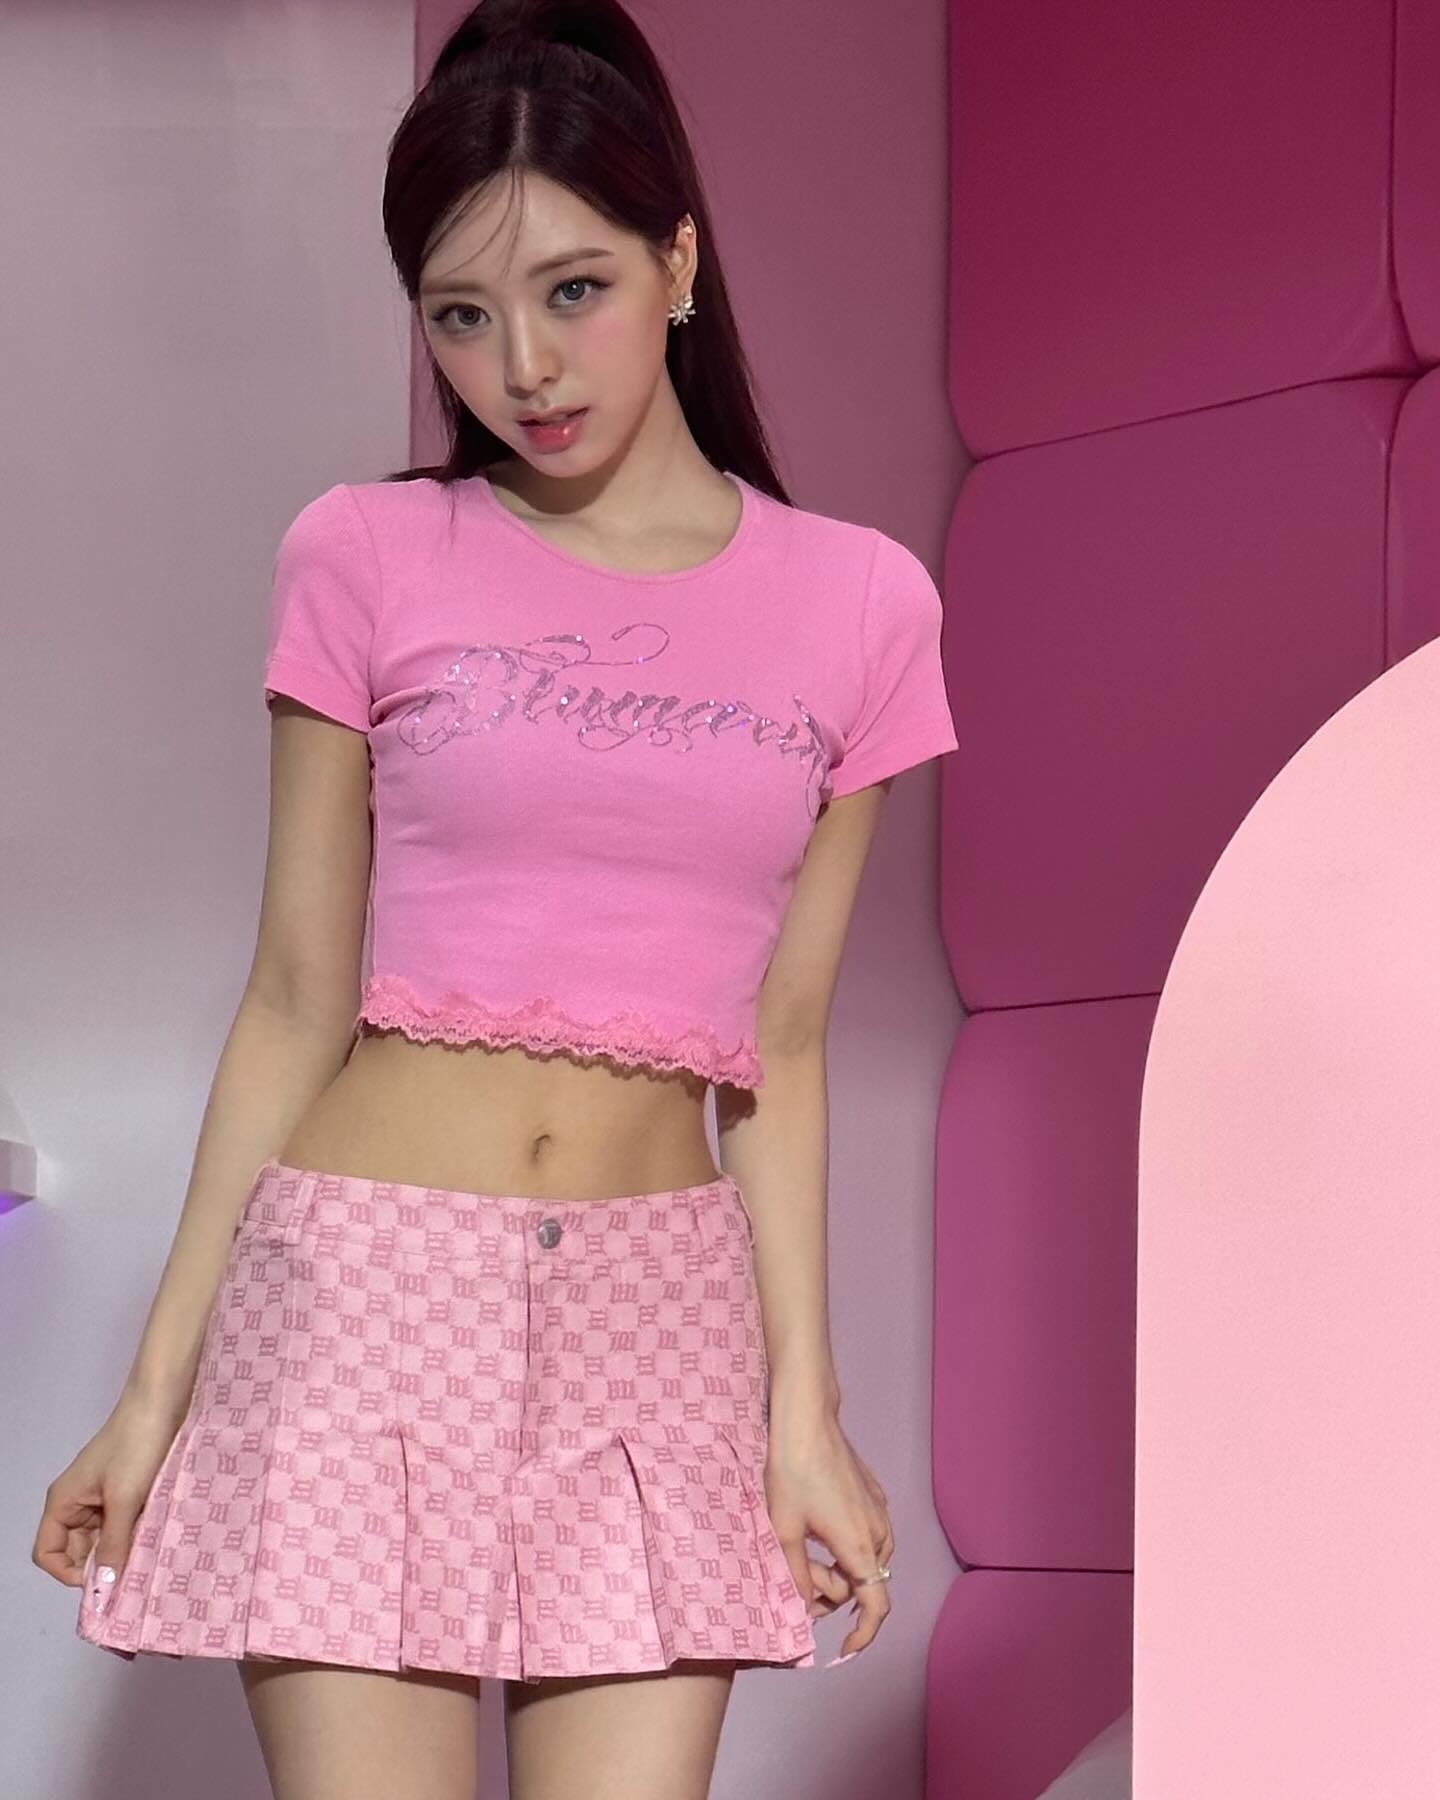 (SOUND)ピンク クロップTシャツ チェック 超ミニ なめらかな脚線美とへそ ITZY ユナ